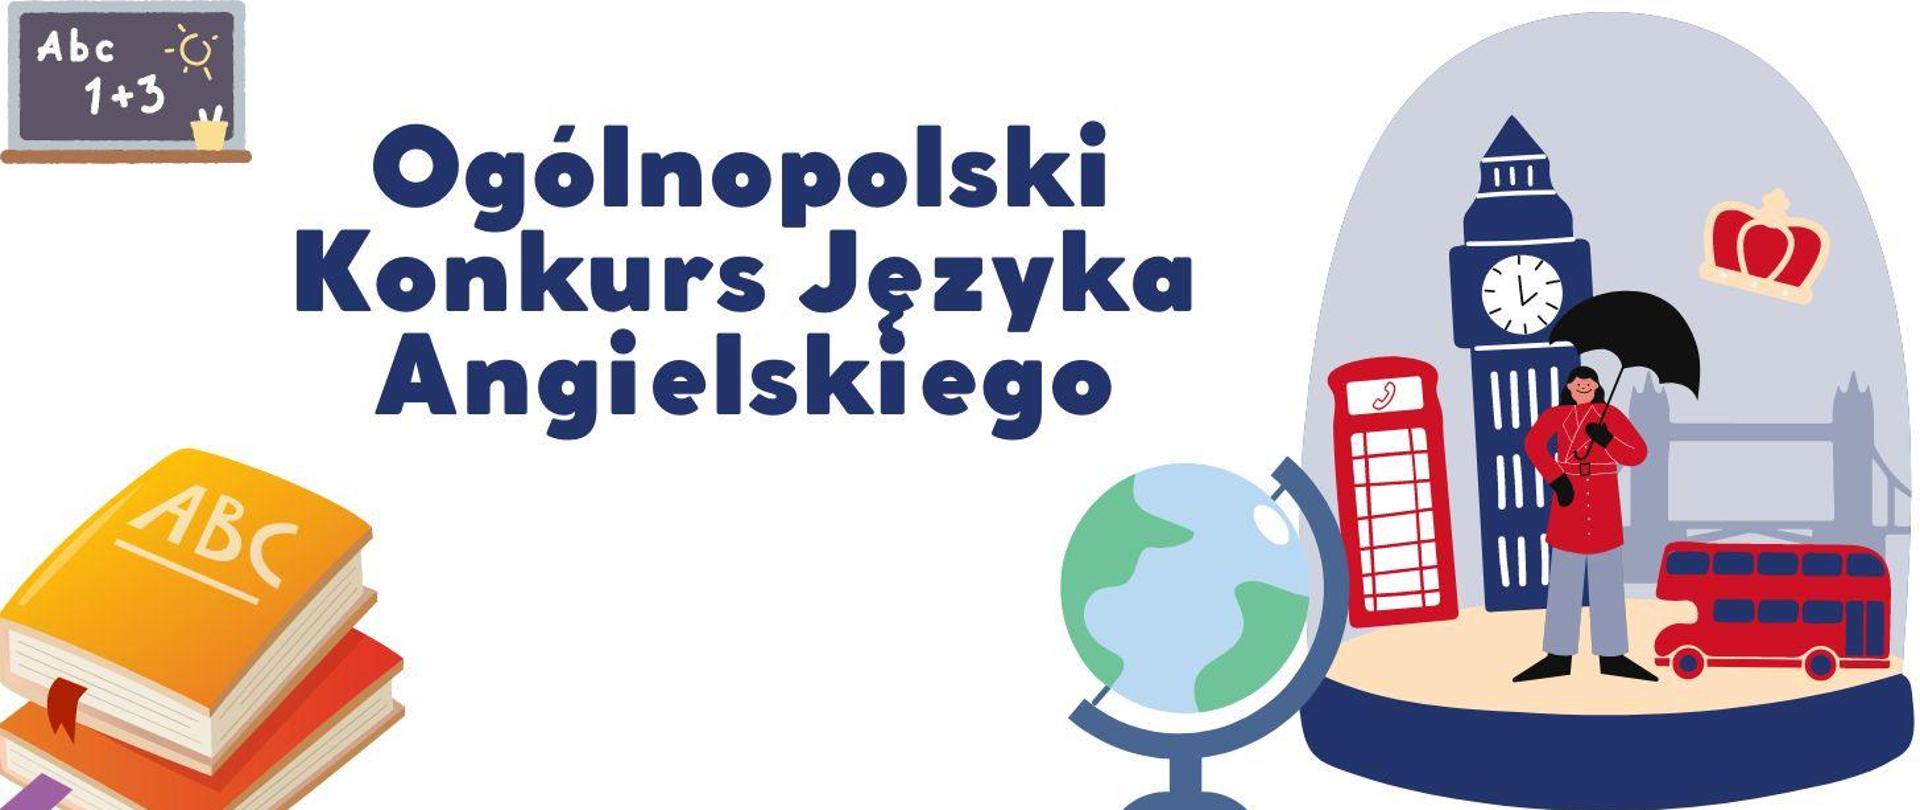 centralnie napis Ogólnopolski Konkurs Języka Angielskiego, po prawej grafika globusa big bena, budki telefonicznej, angielski autobus, po prawej na dole dwie książki